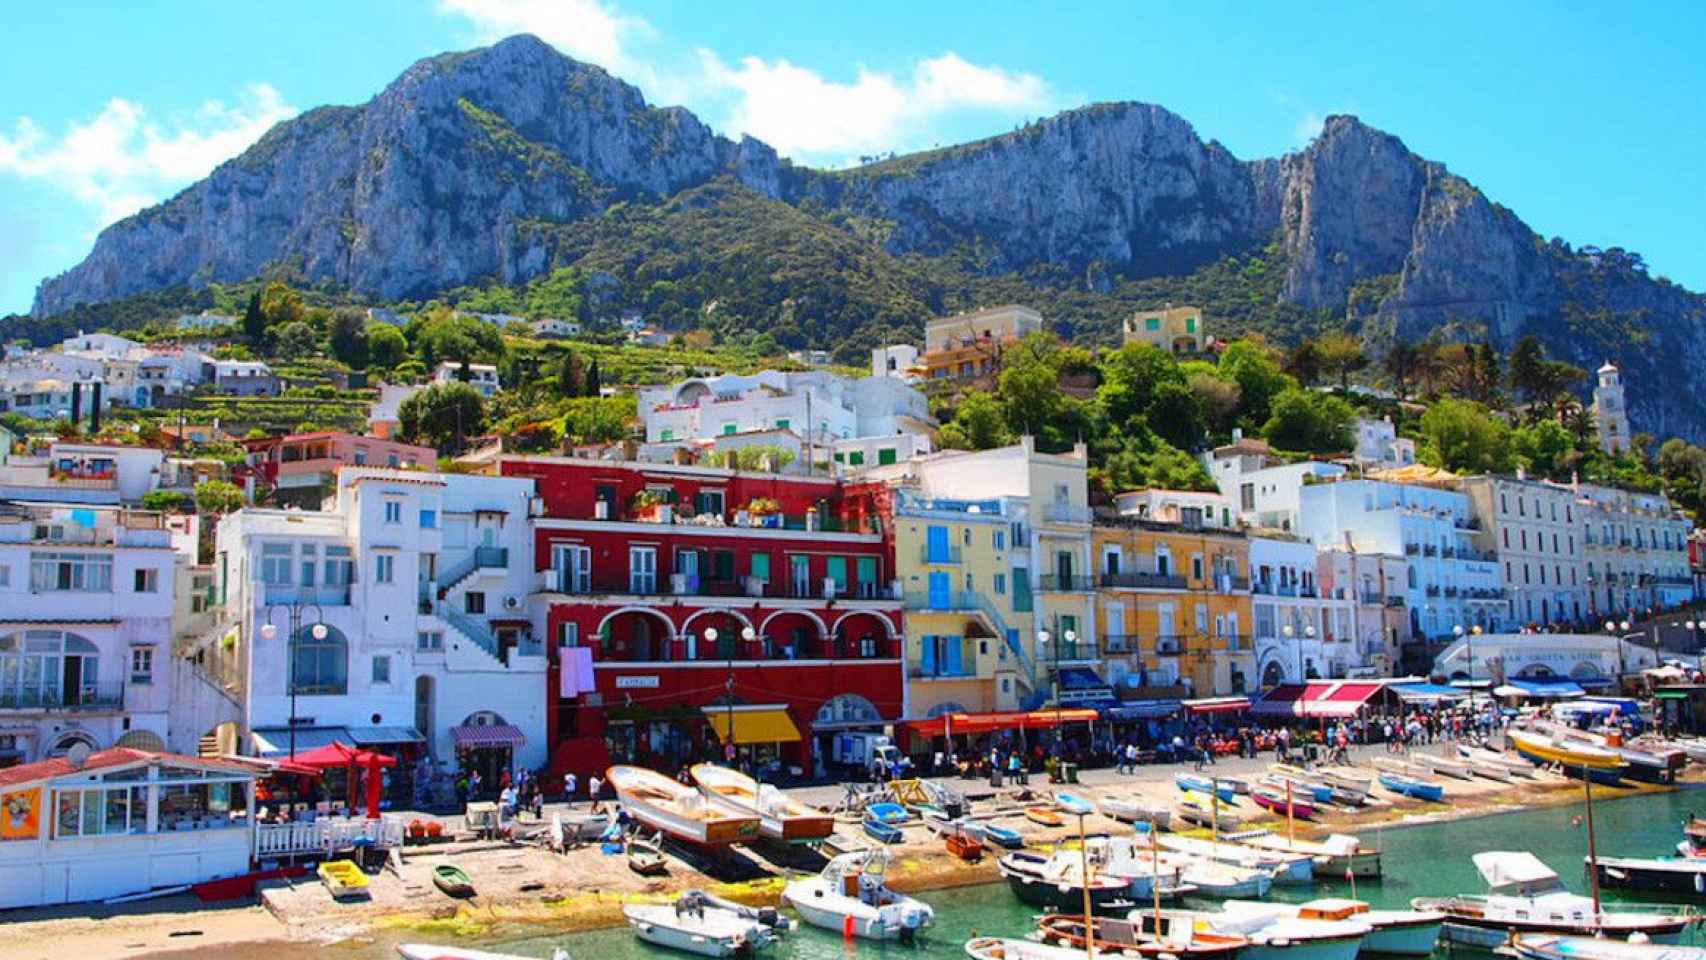 Imagen del puerto de Capri, Italia / GETYOURGUIDE